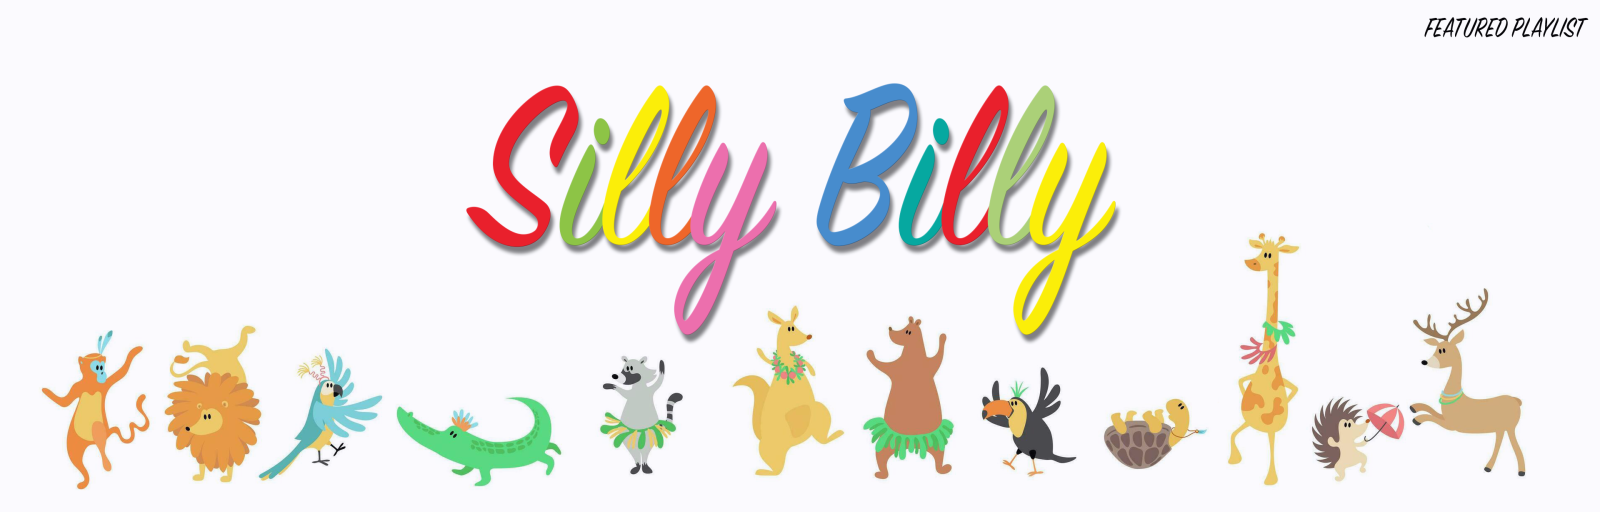 Silly Billy playlist